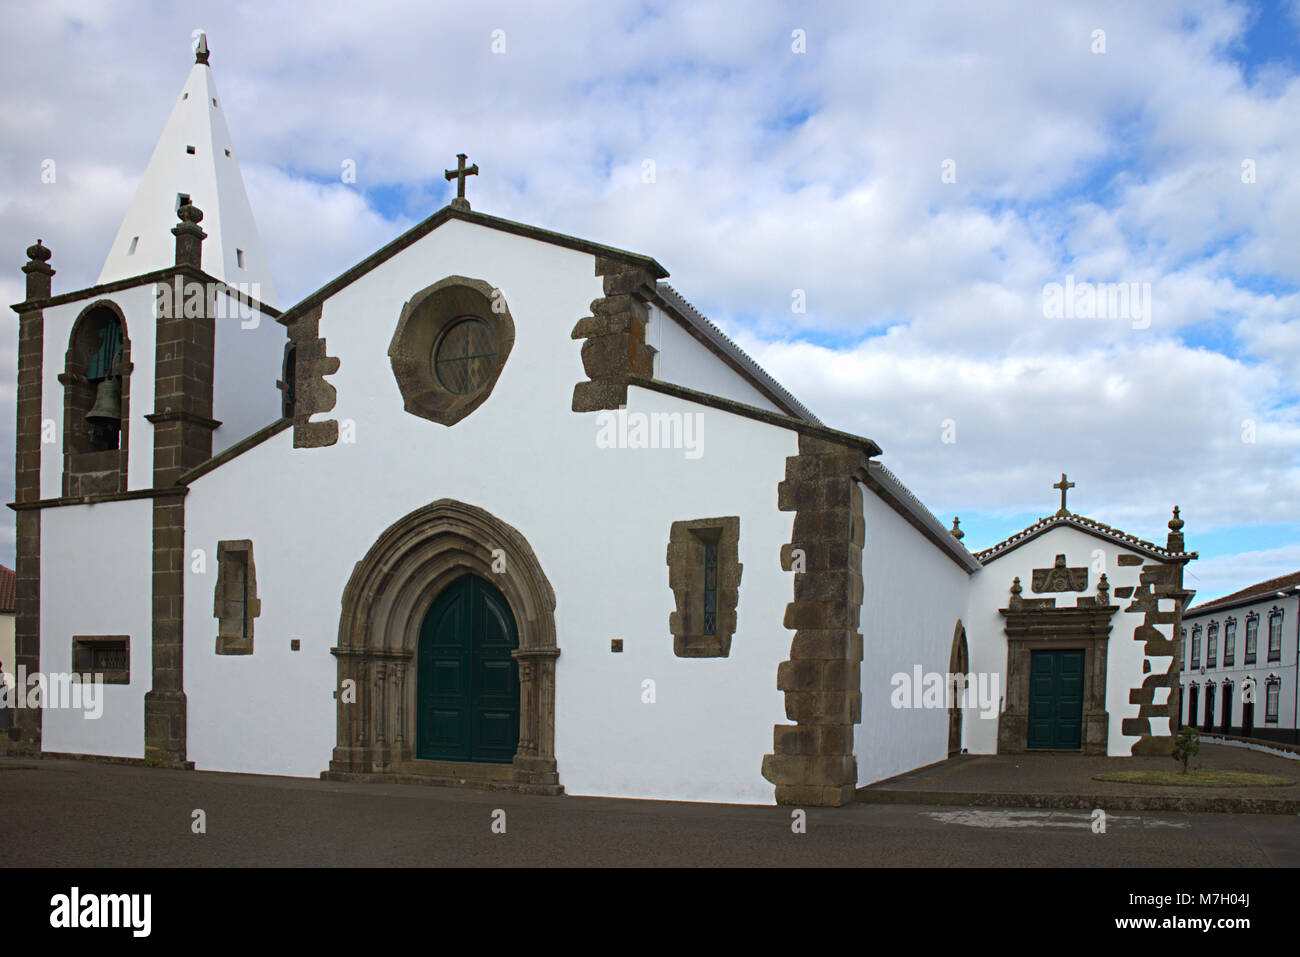 São Mateus, Catholic Mother Church of São Sebastiãno (St Sebastian), Terceira island, Azores, Portugal Stock Photo